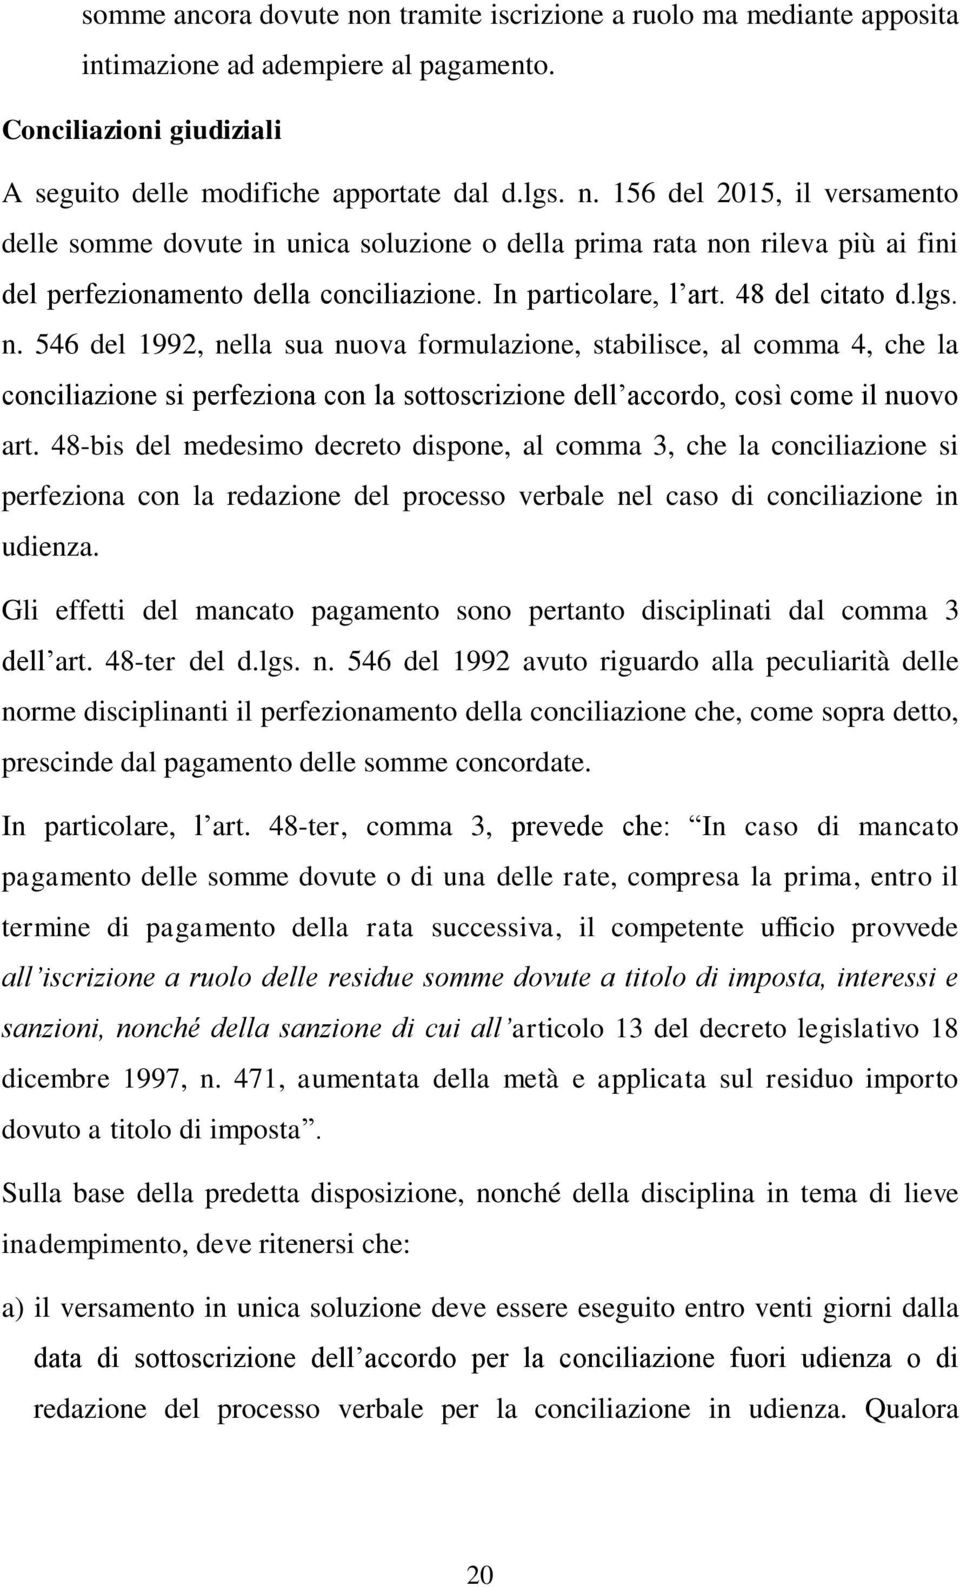 546 del 1992, nella sua nuova formulazione, stabilisce, al comma 4, che la conciliazione si perfeziona con la sottoscrizione dell accordo, così come il nuovo art.